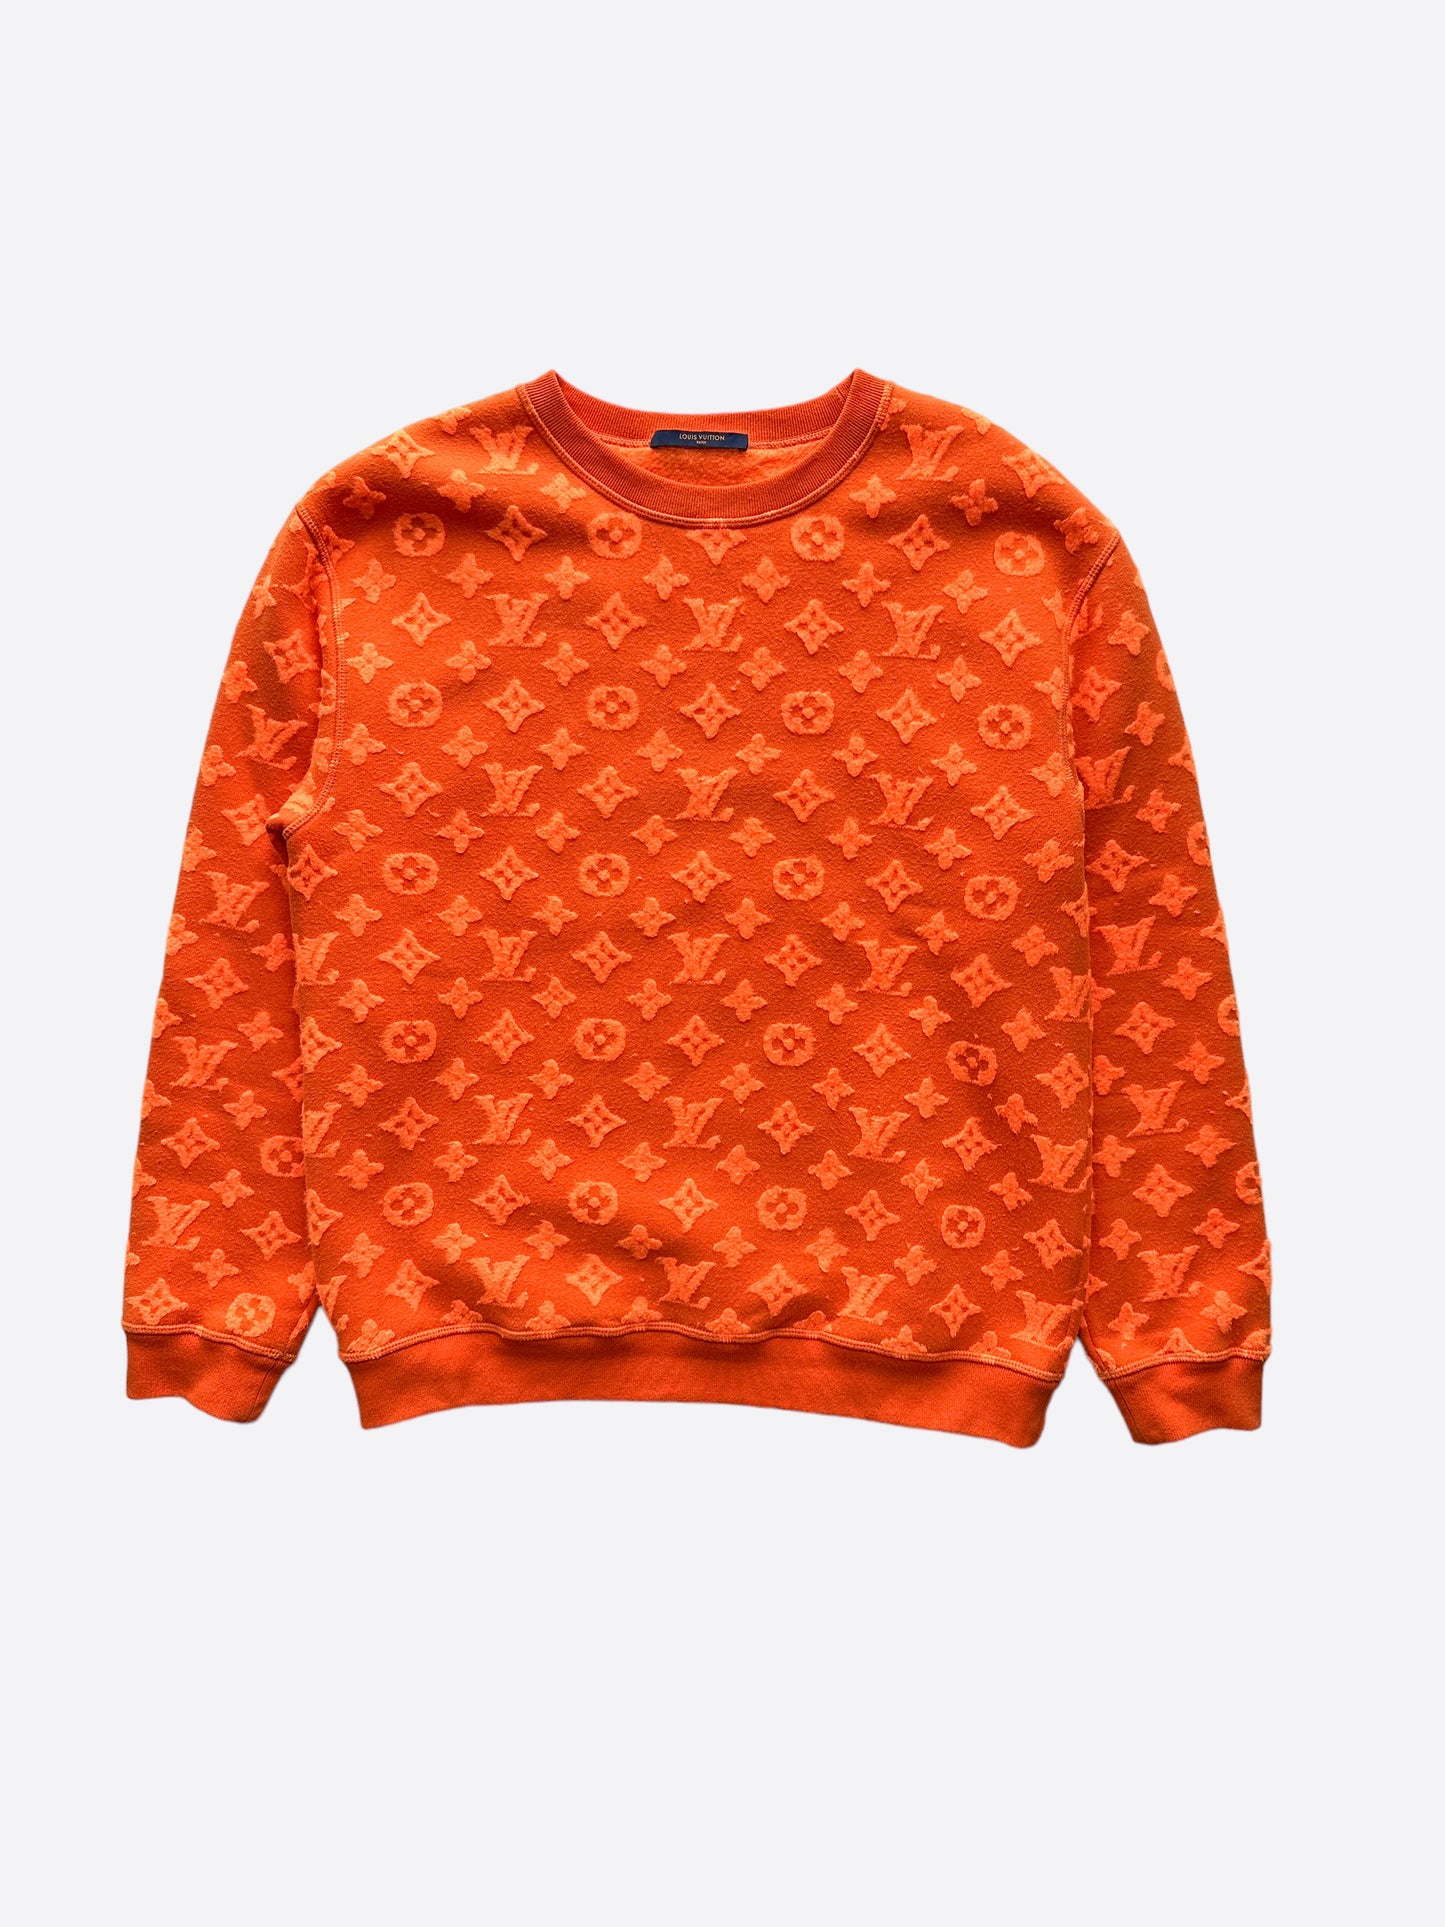 Louis Vuitton Full Monogram Jacquard Crewneck Orange